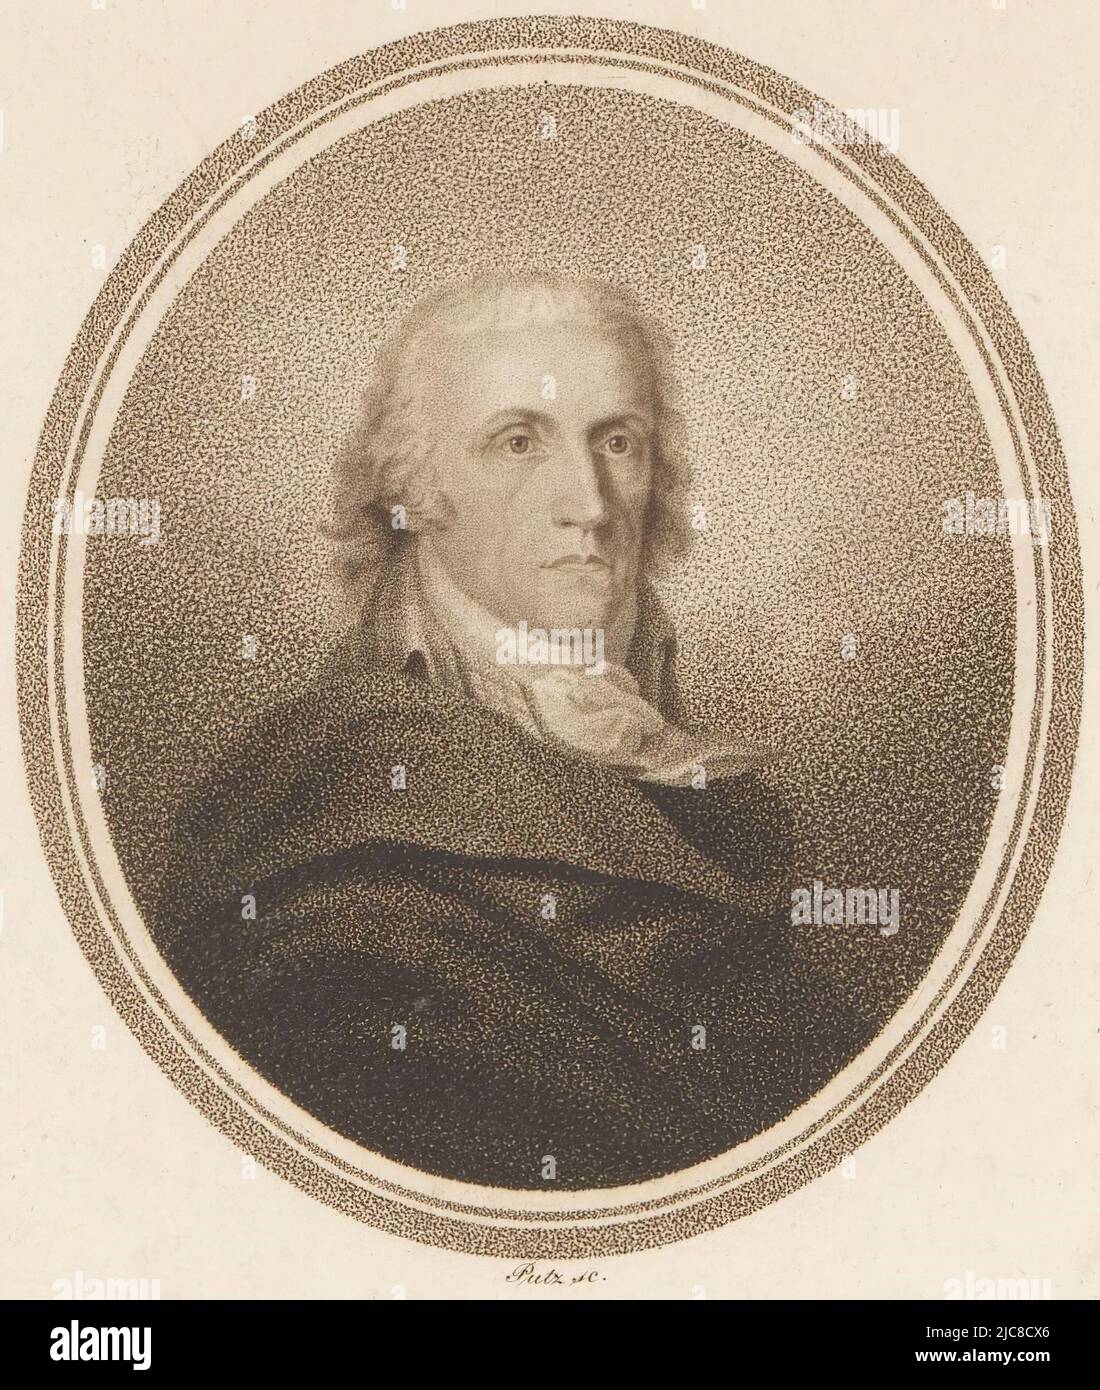 Portrait de Johann Adam Schmidt, imprimeur: Johann Putz, (mentionné sur l'objet), 1750 - 1849, papier, h 224 mm - l 175 mm Banque D'Images